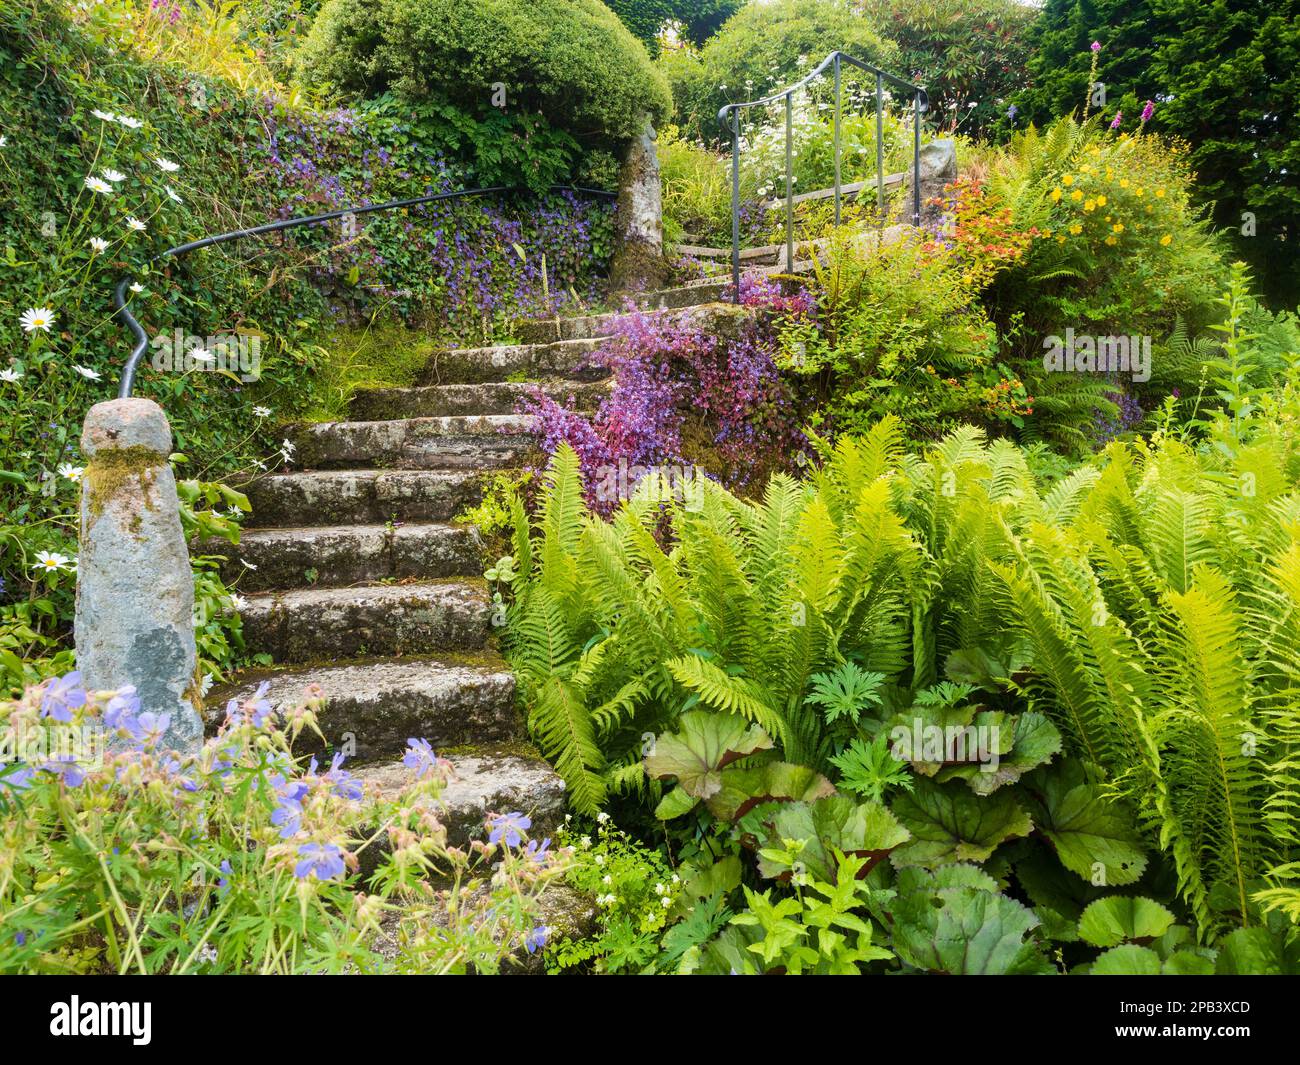 Ancient stone steps in the walled garden at The Garden House, Buckland Monachorum, Devon Stock Photo